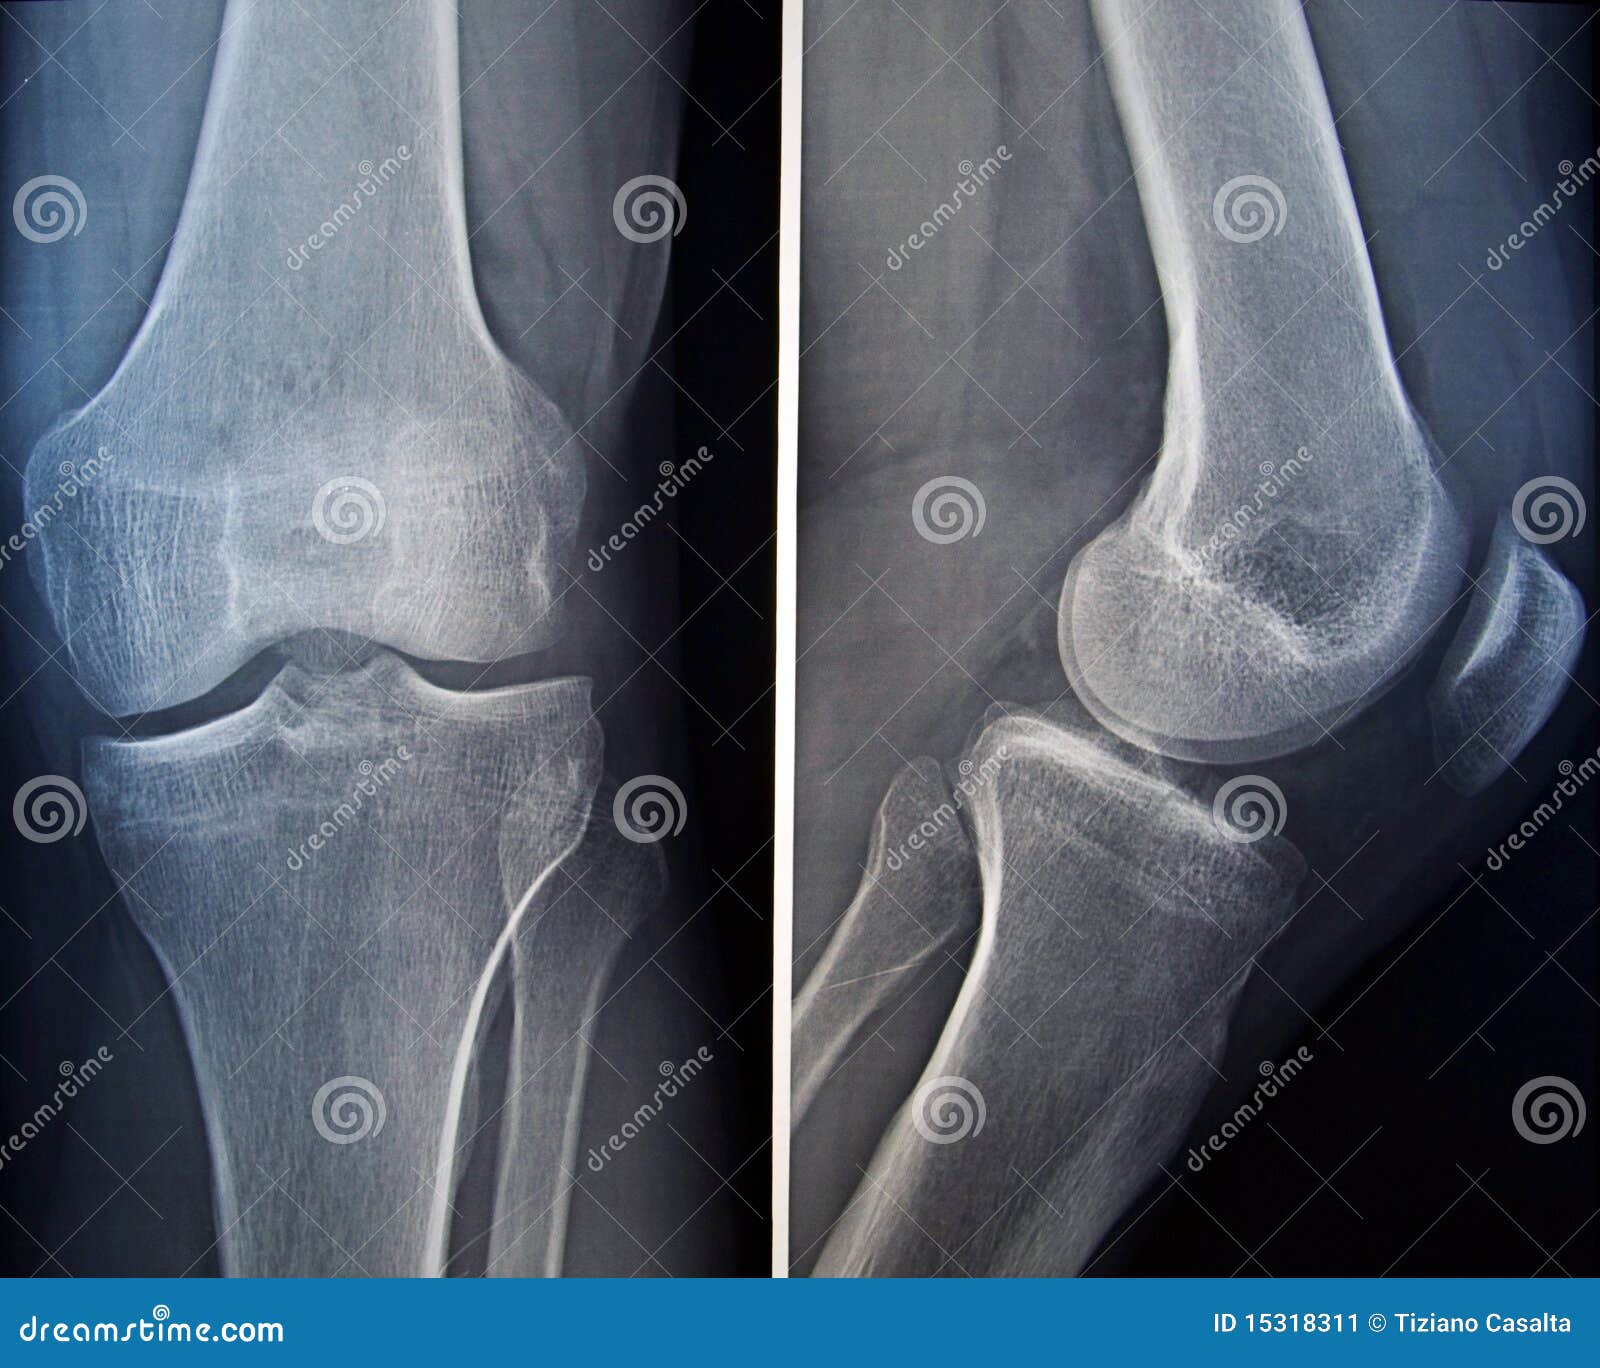 Рентген колена. Рентген здорового коленного сустава. Рентген снимок здорового колена. Коленный сустав снимок здорового сустава. Правый коленный сустав рентген.